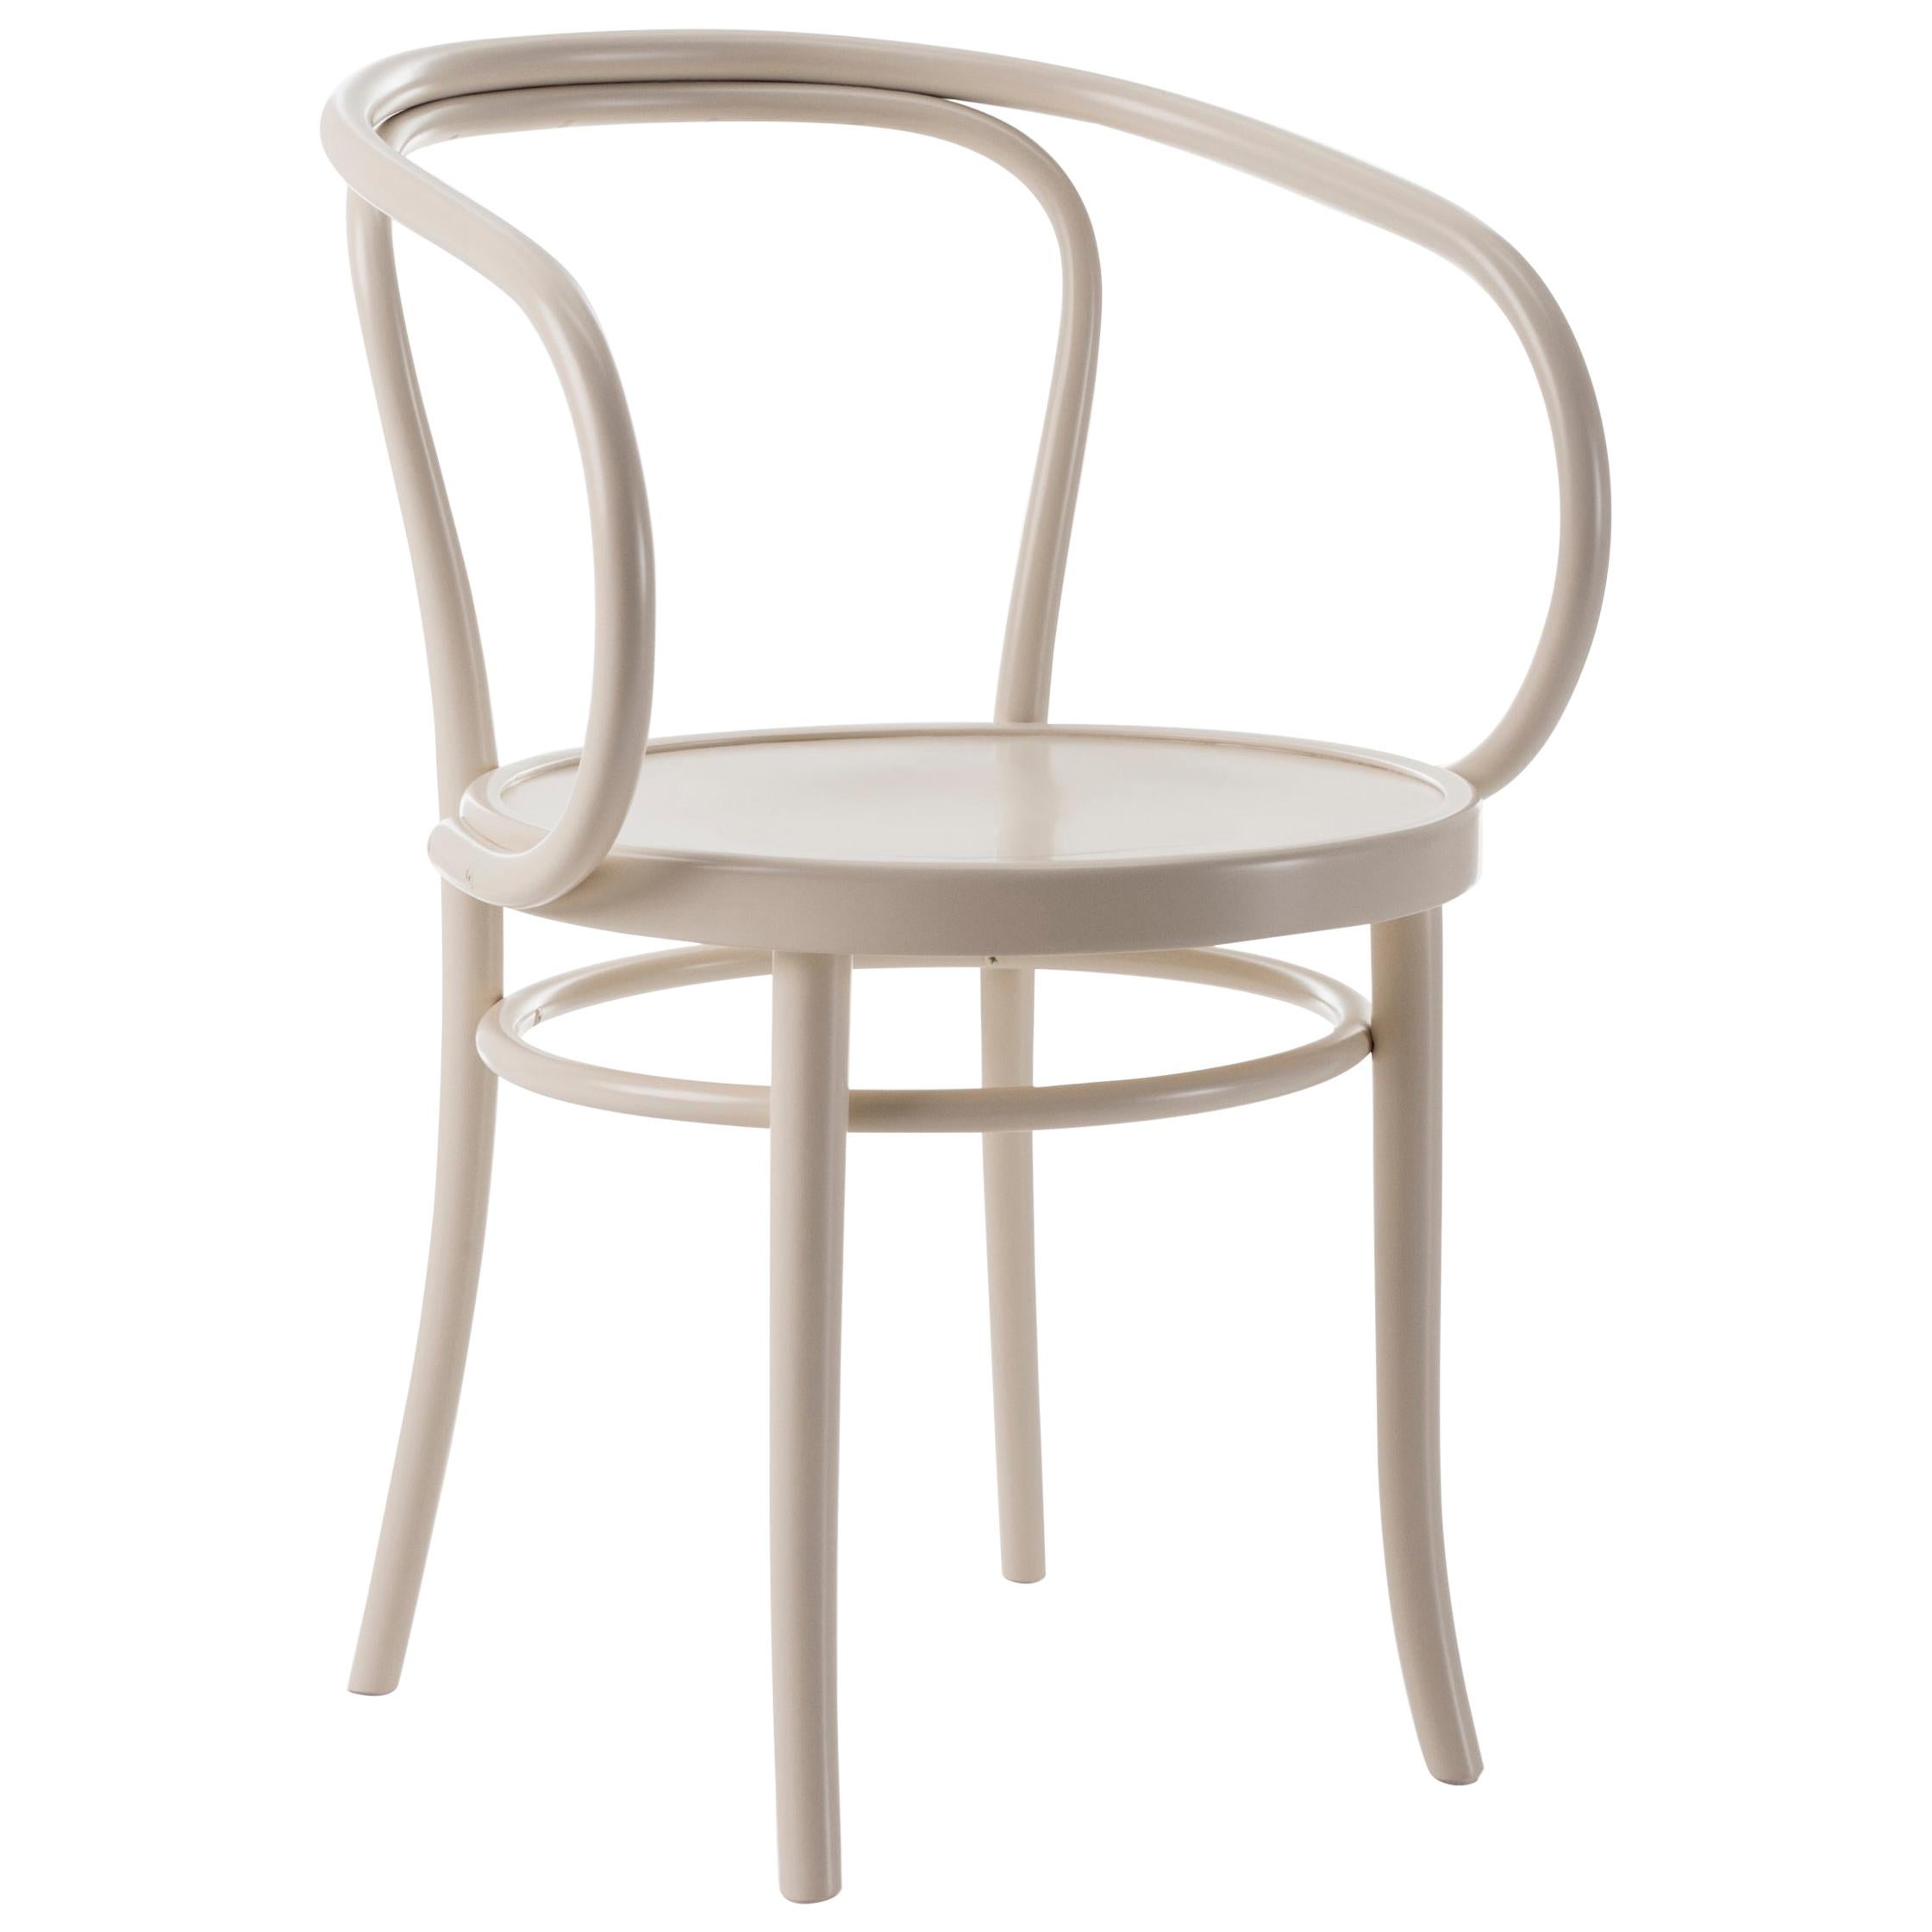 Gebrüder Thonet Vienna GmbH Wiener Stuhl Chair in Pure White